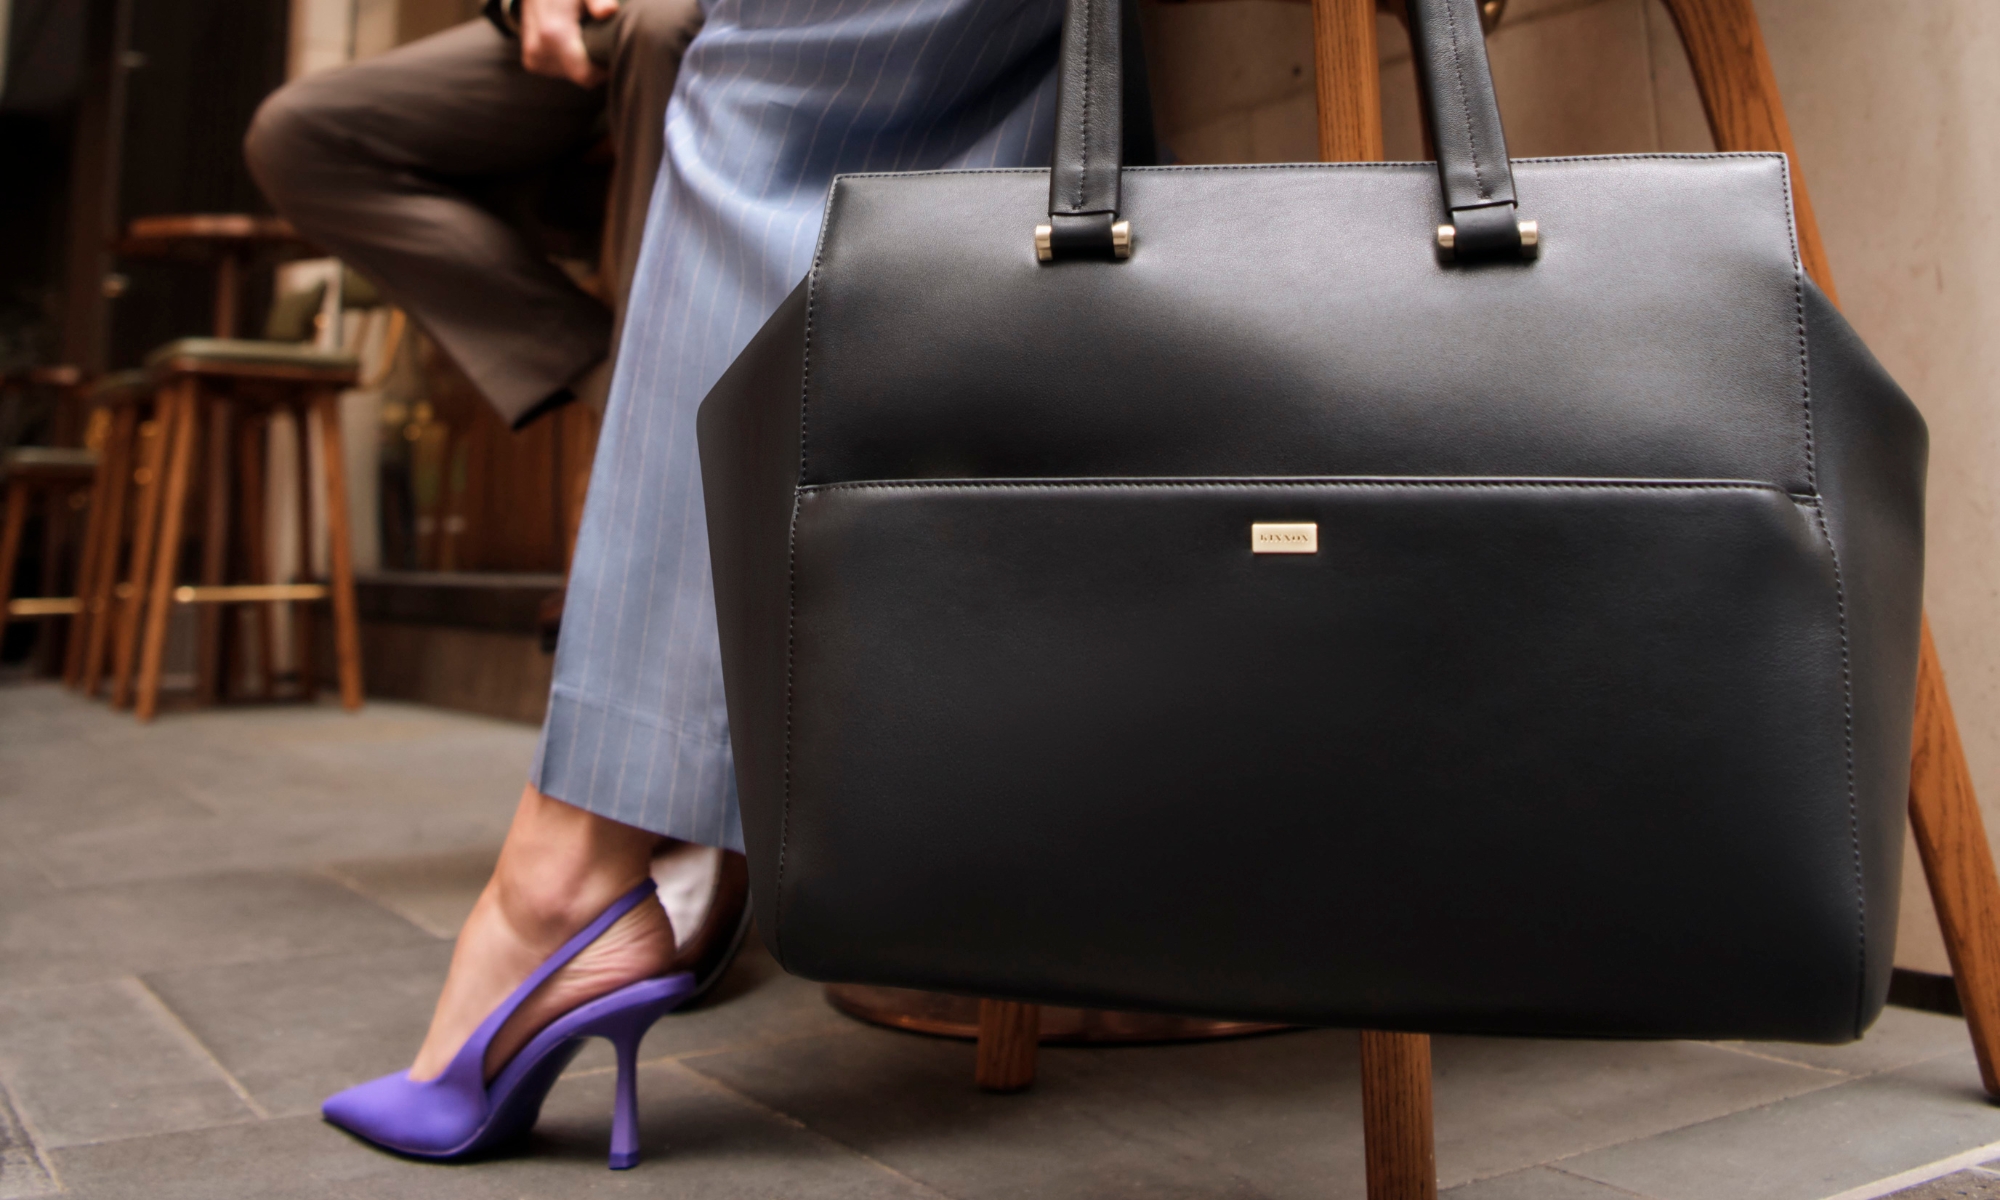 Kinnon Women’s Kingsley Carryall & Laptop Bag in black nappa leather